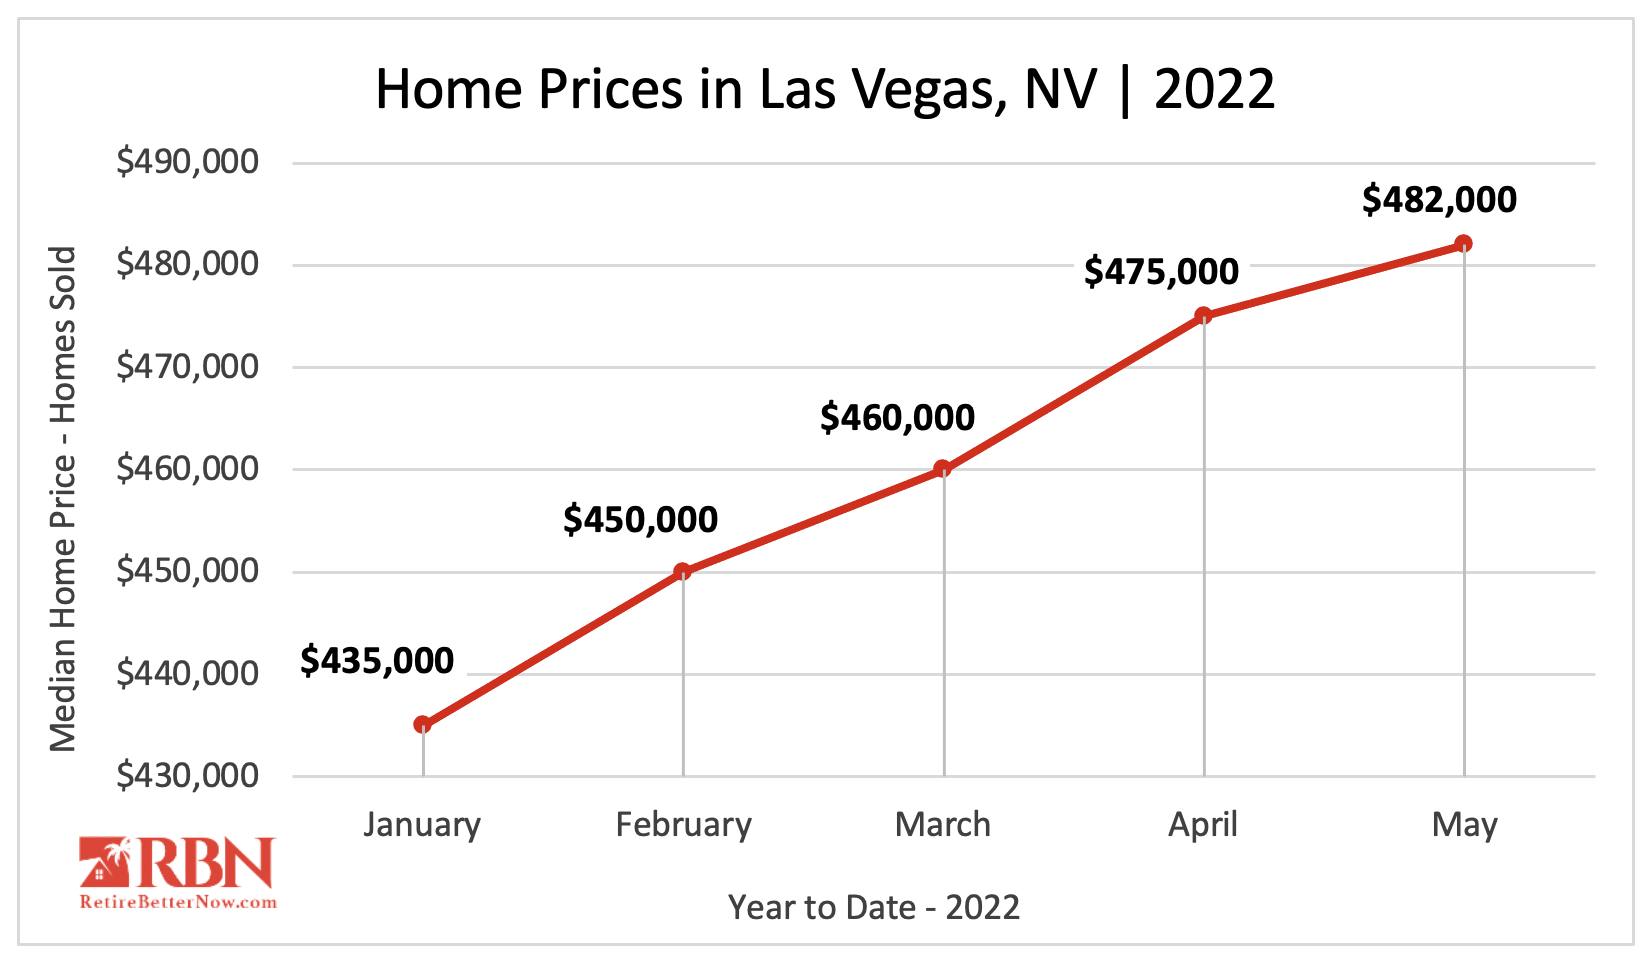 Median Home Price in Las Vegas, NV 2022